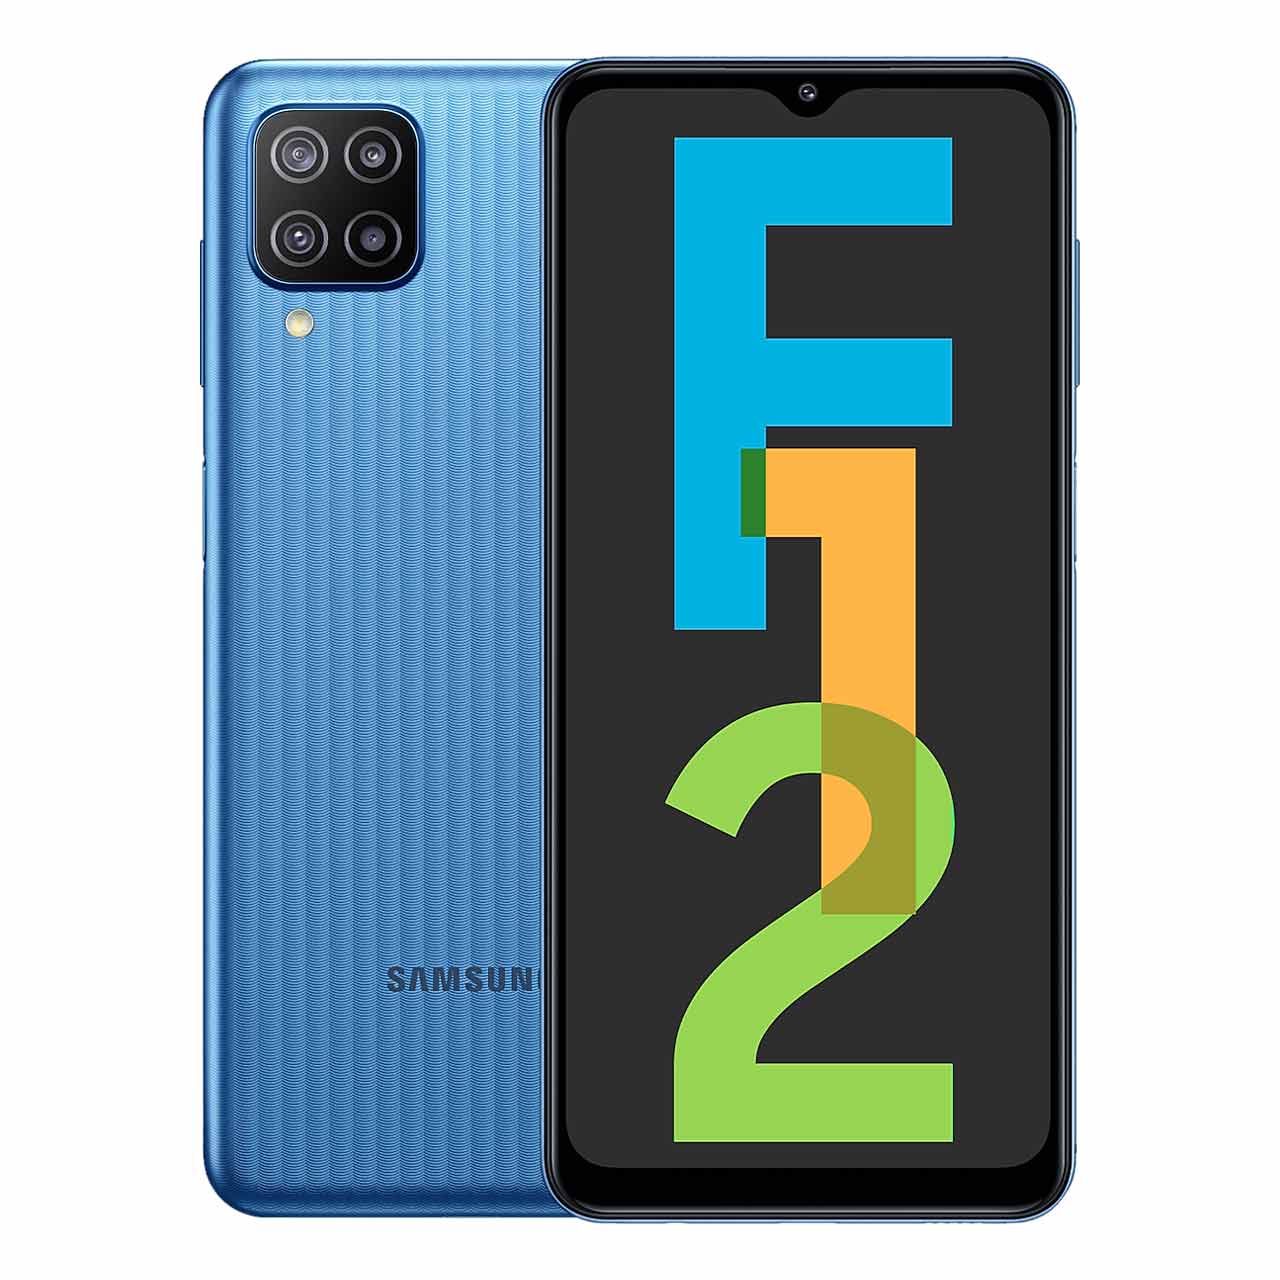  گوشی موبایل سامسونگ مدل Galaxy F12 (RAM 4) ظرفیت 64GB - آبی روشن     